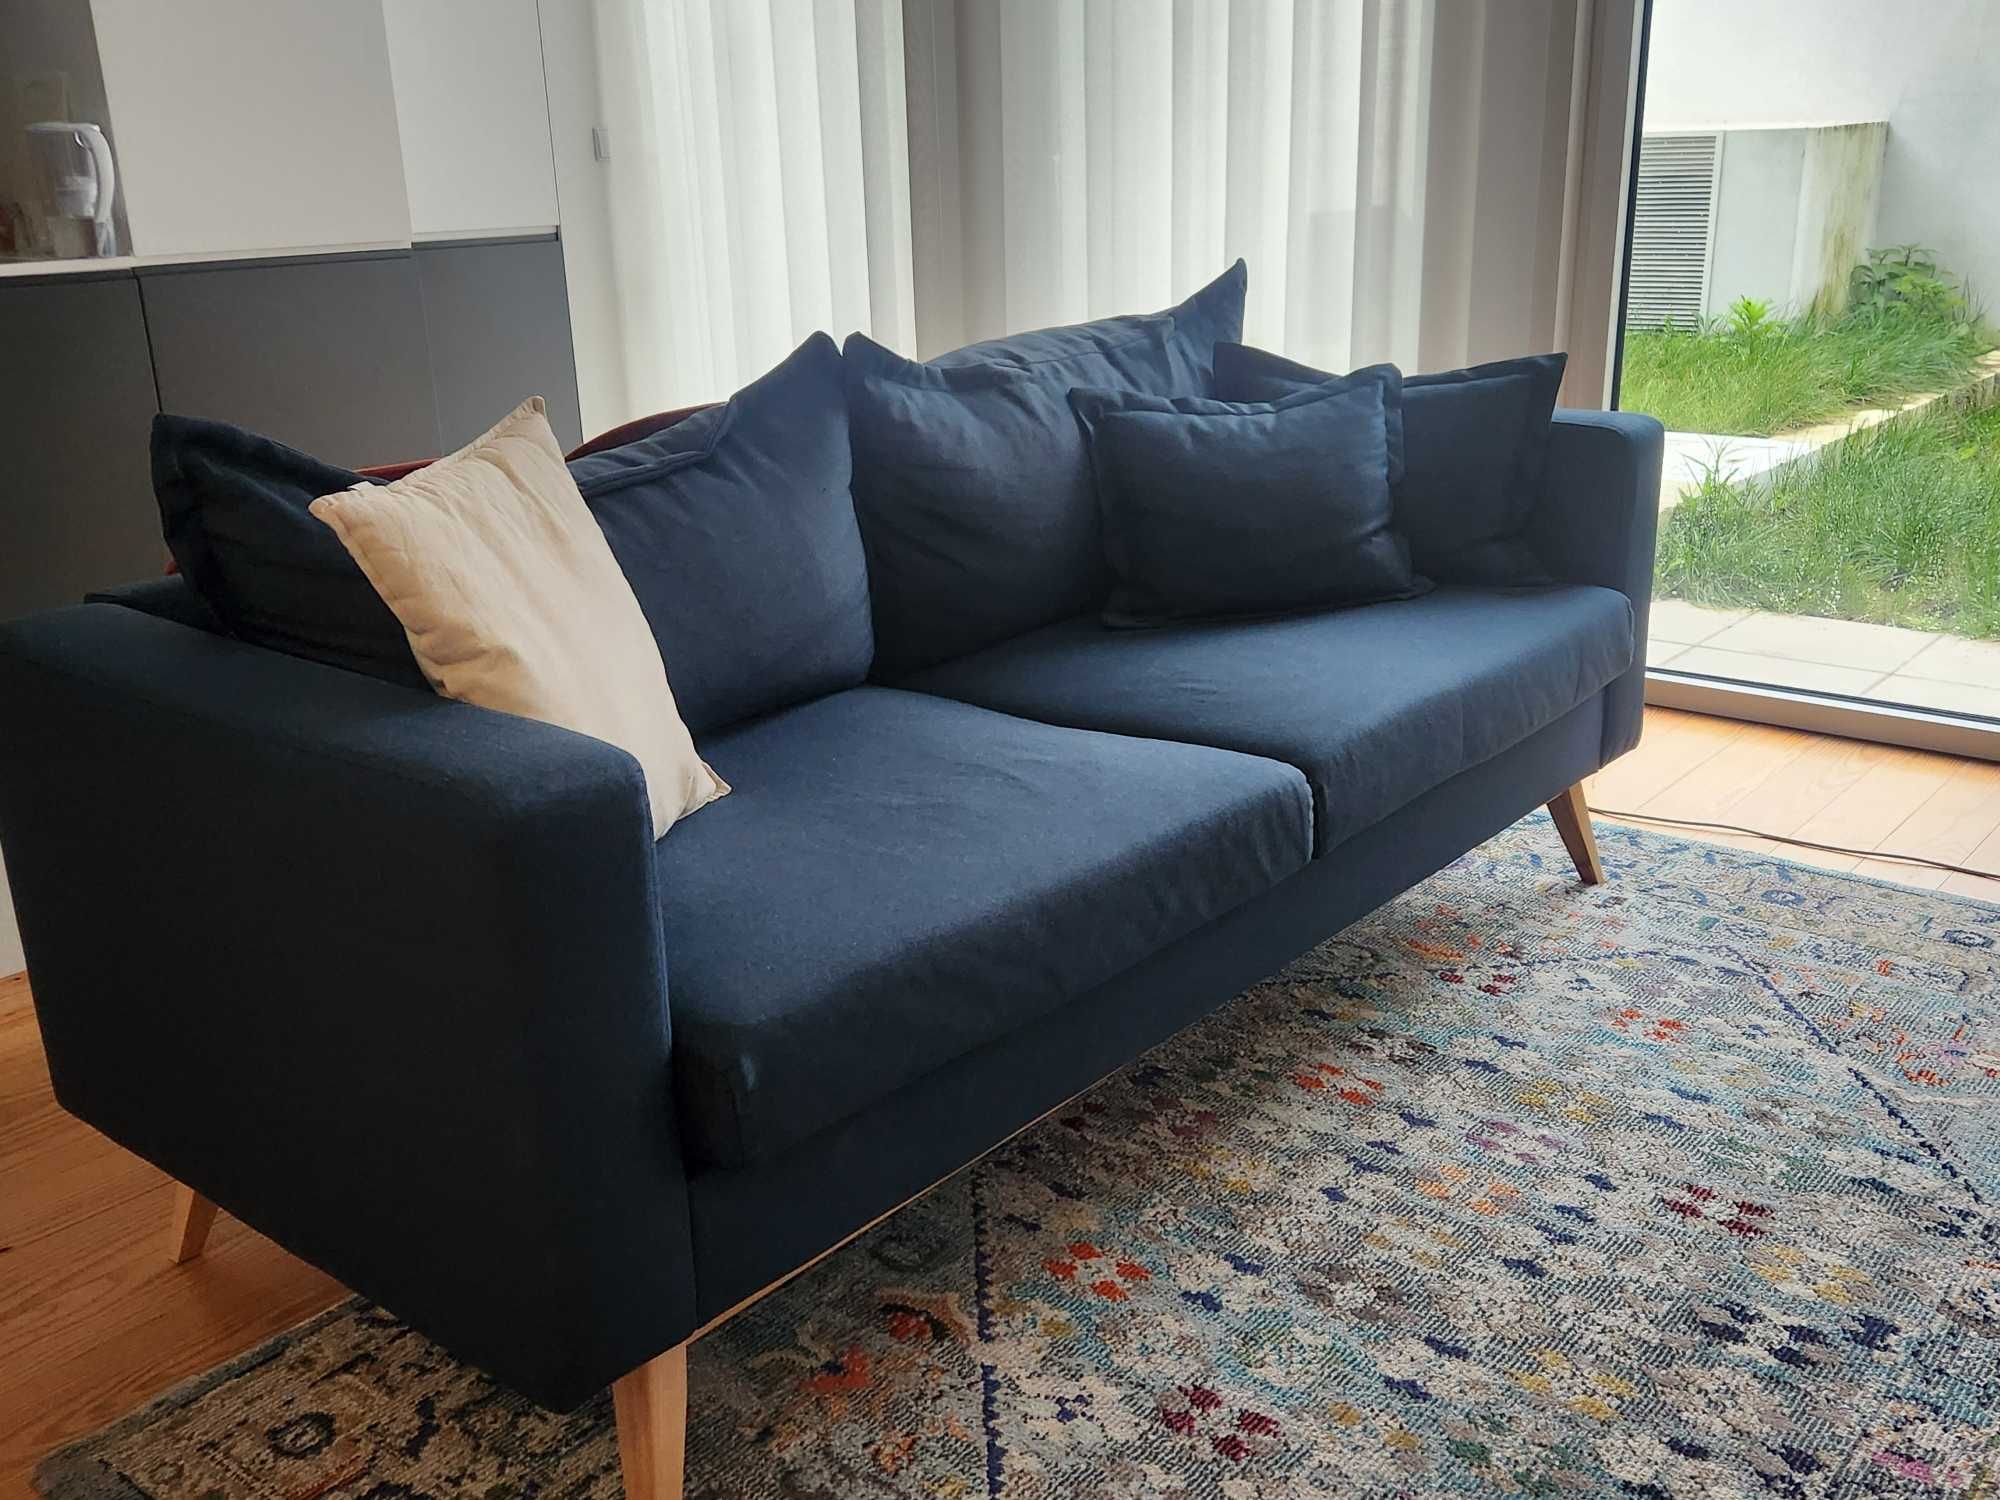 Vendo sofá / Sofa for sale!